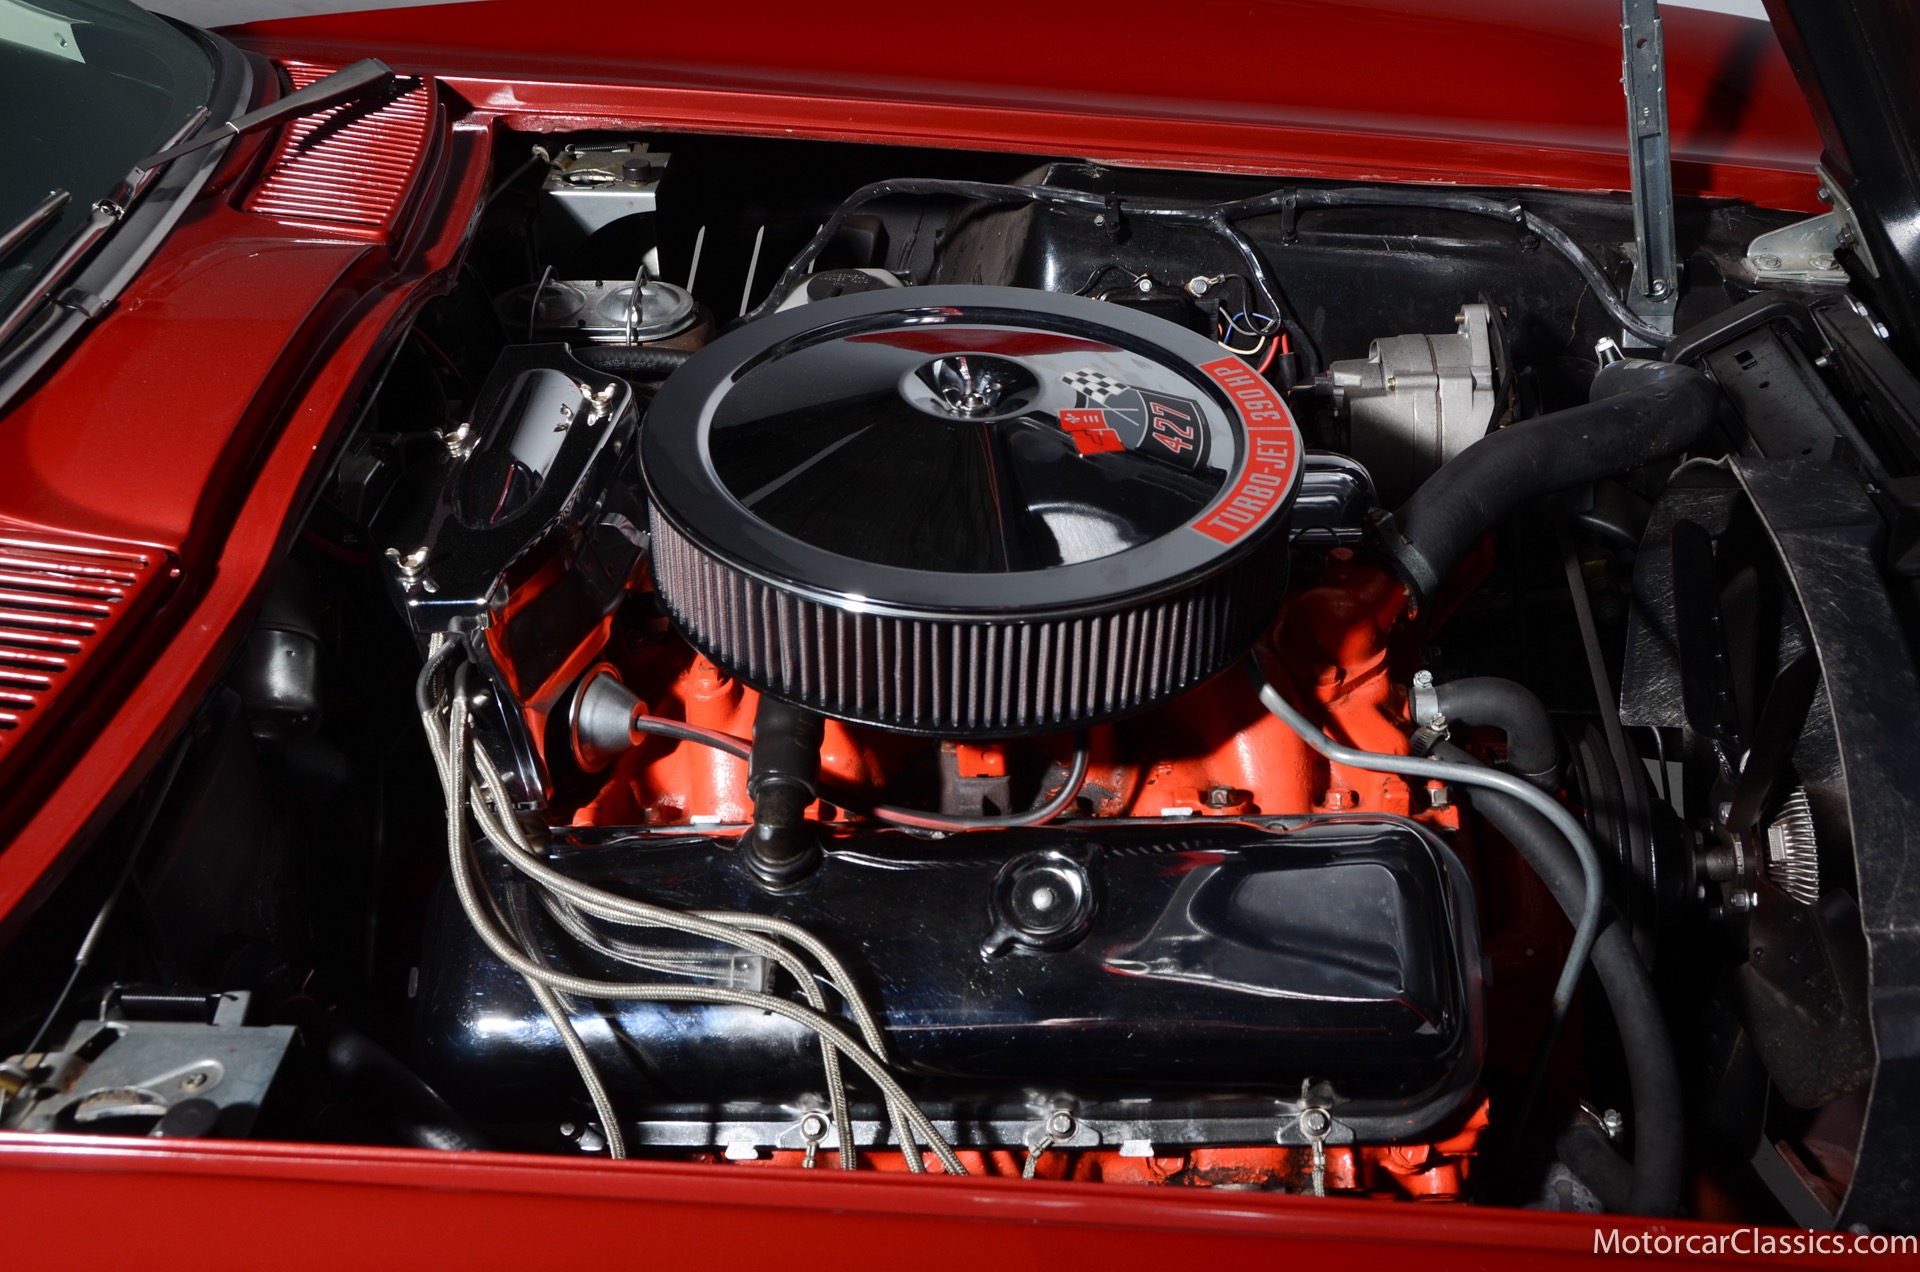 1967 Chevrolet Corvette 